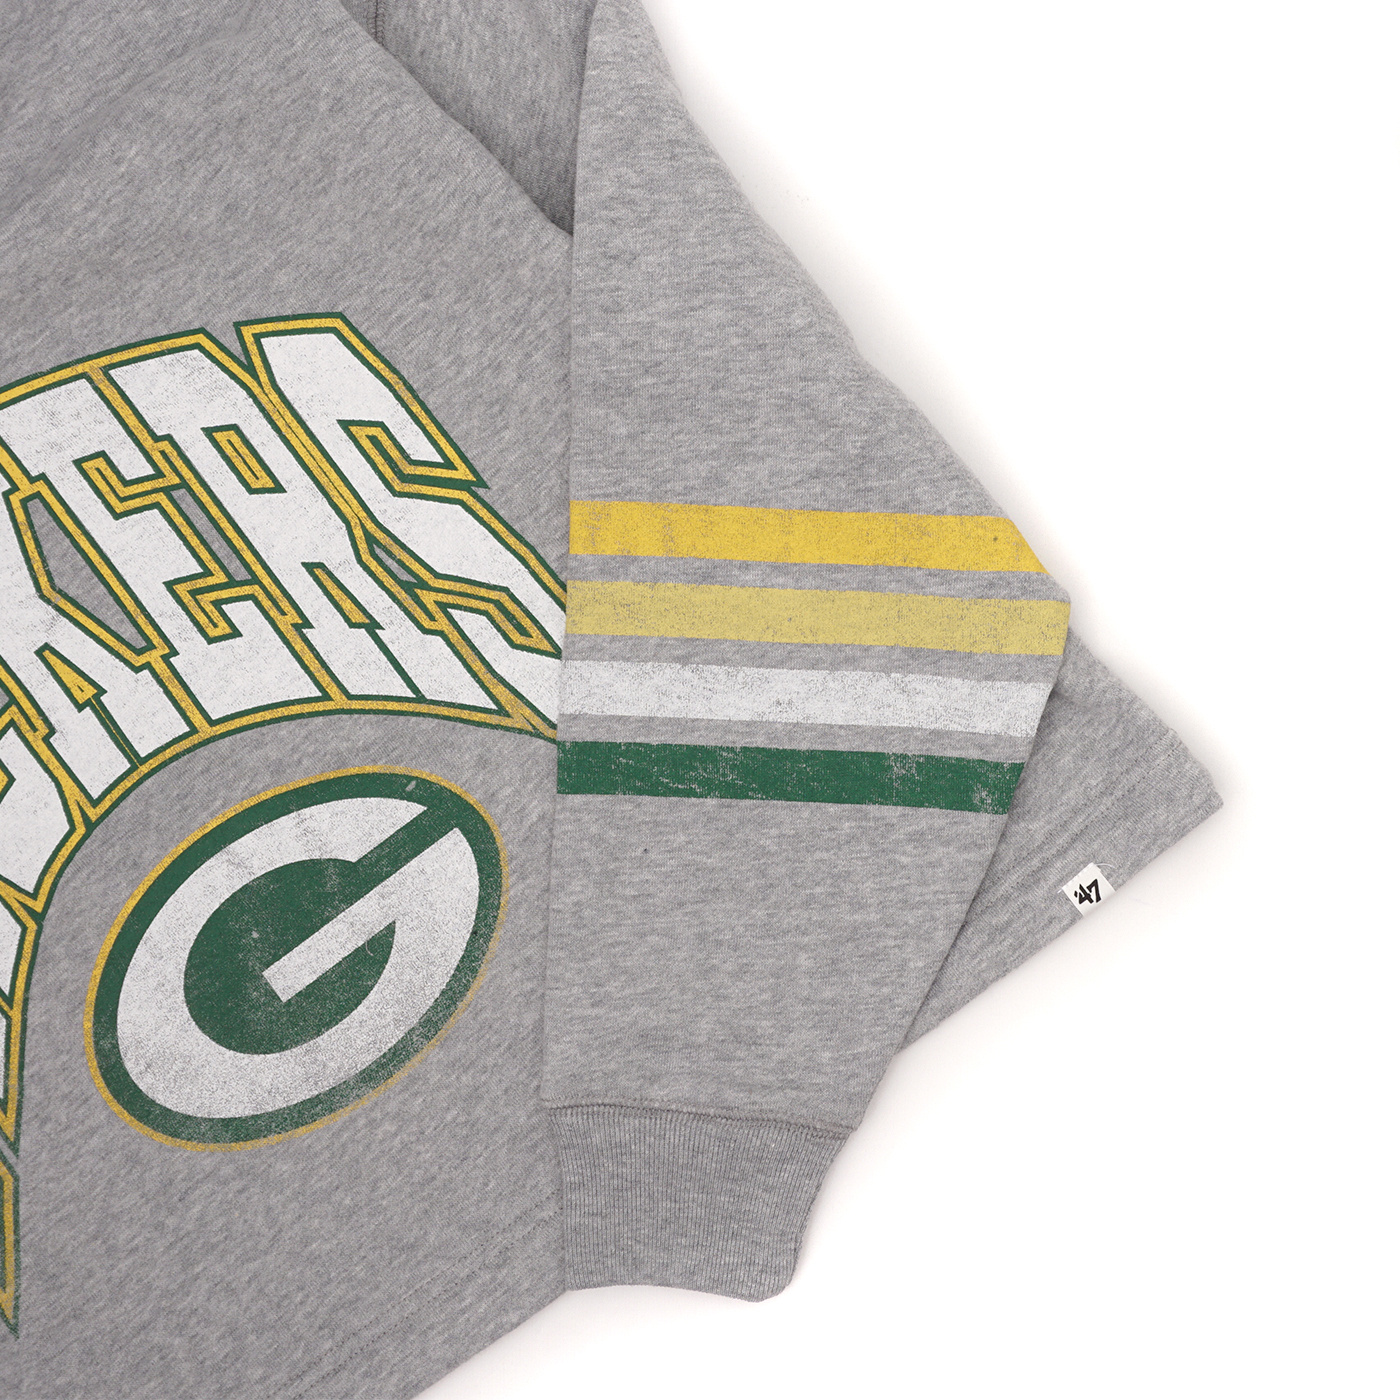 Green Bay Packers 47 Brand Gray Pullover Hoodie NFL Sweatshirt